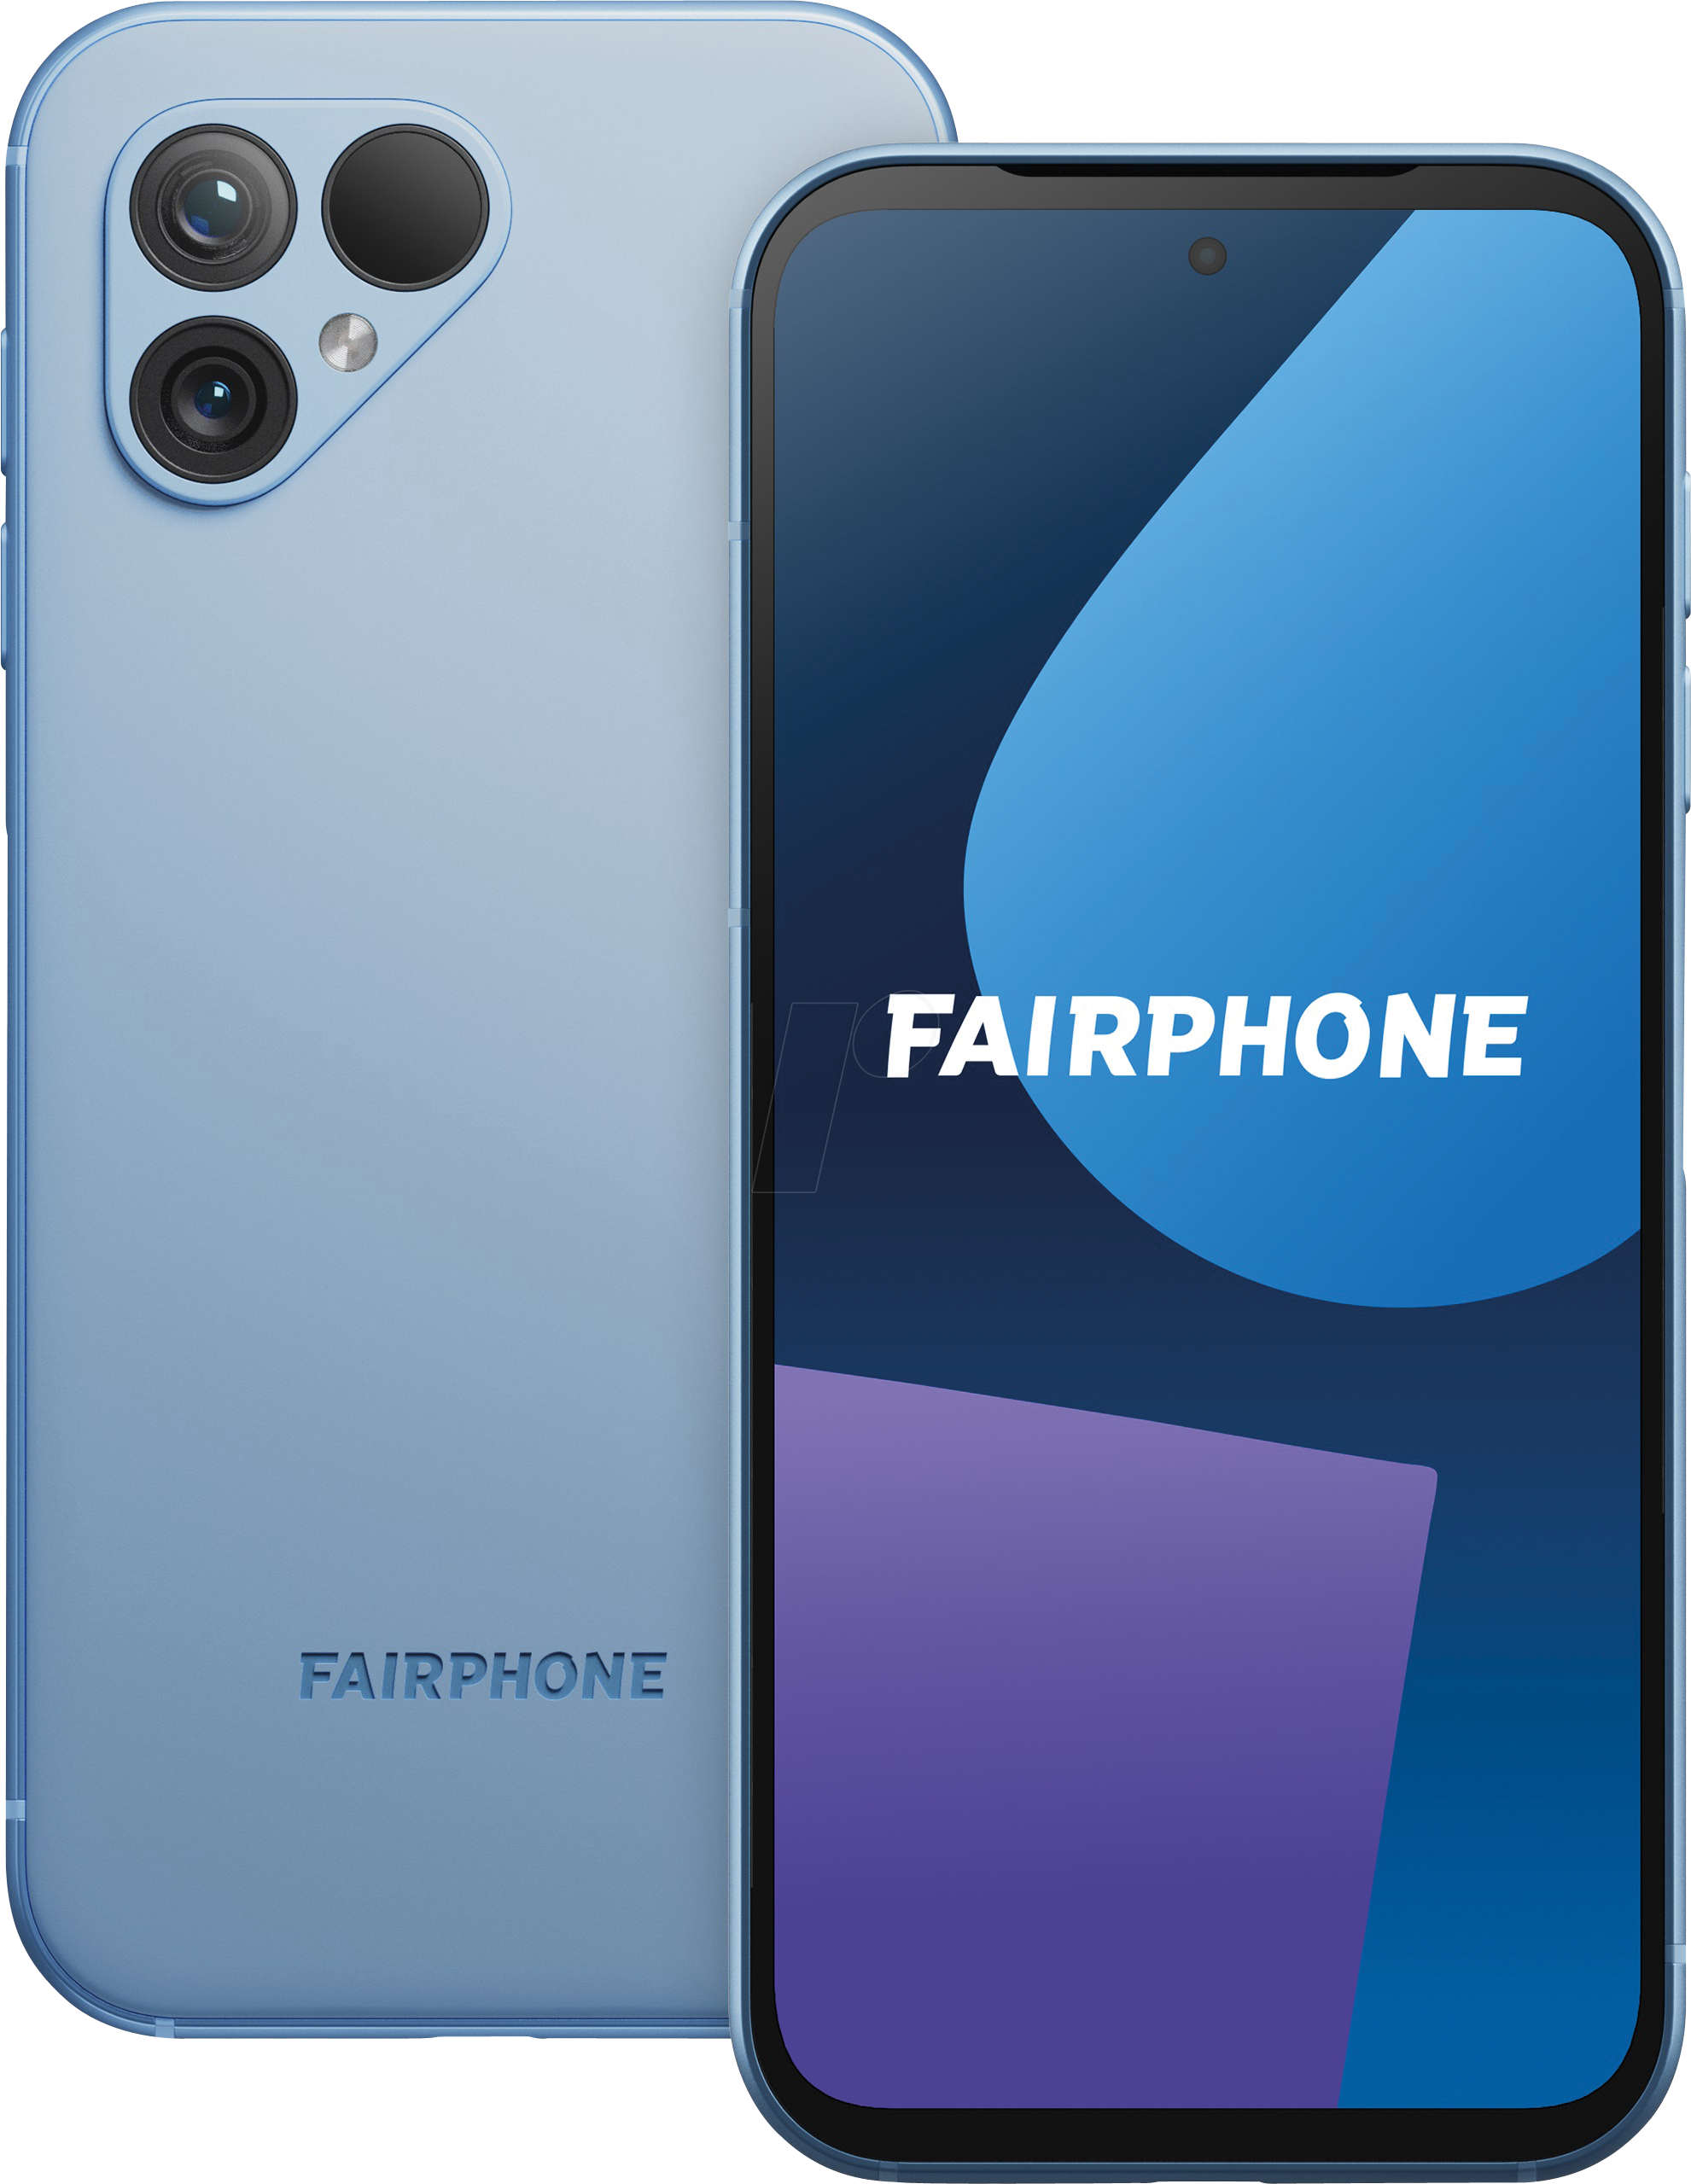 FAIR 5 BL - Smartphone, Fairphone 5 5G, himmelblau